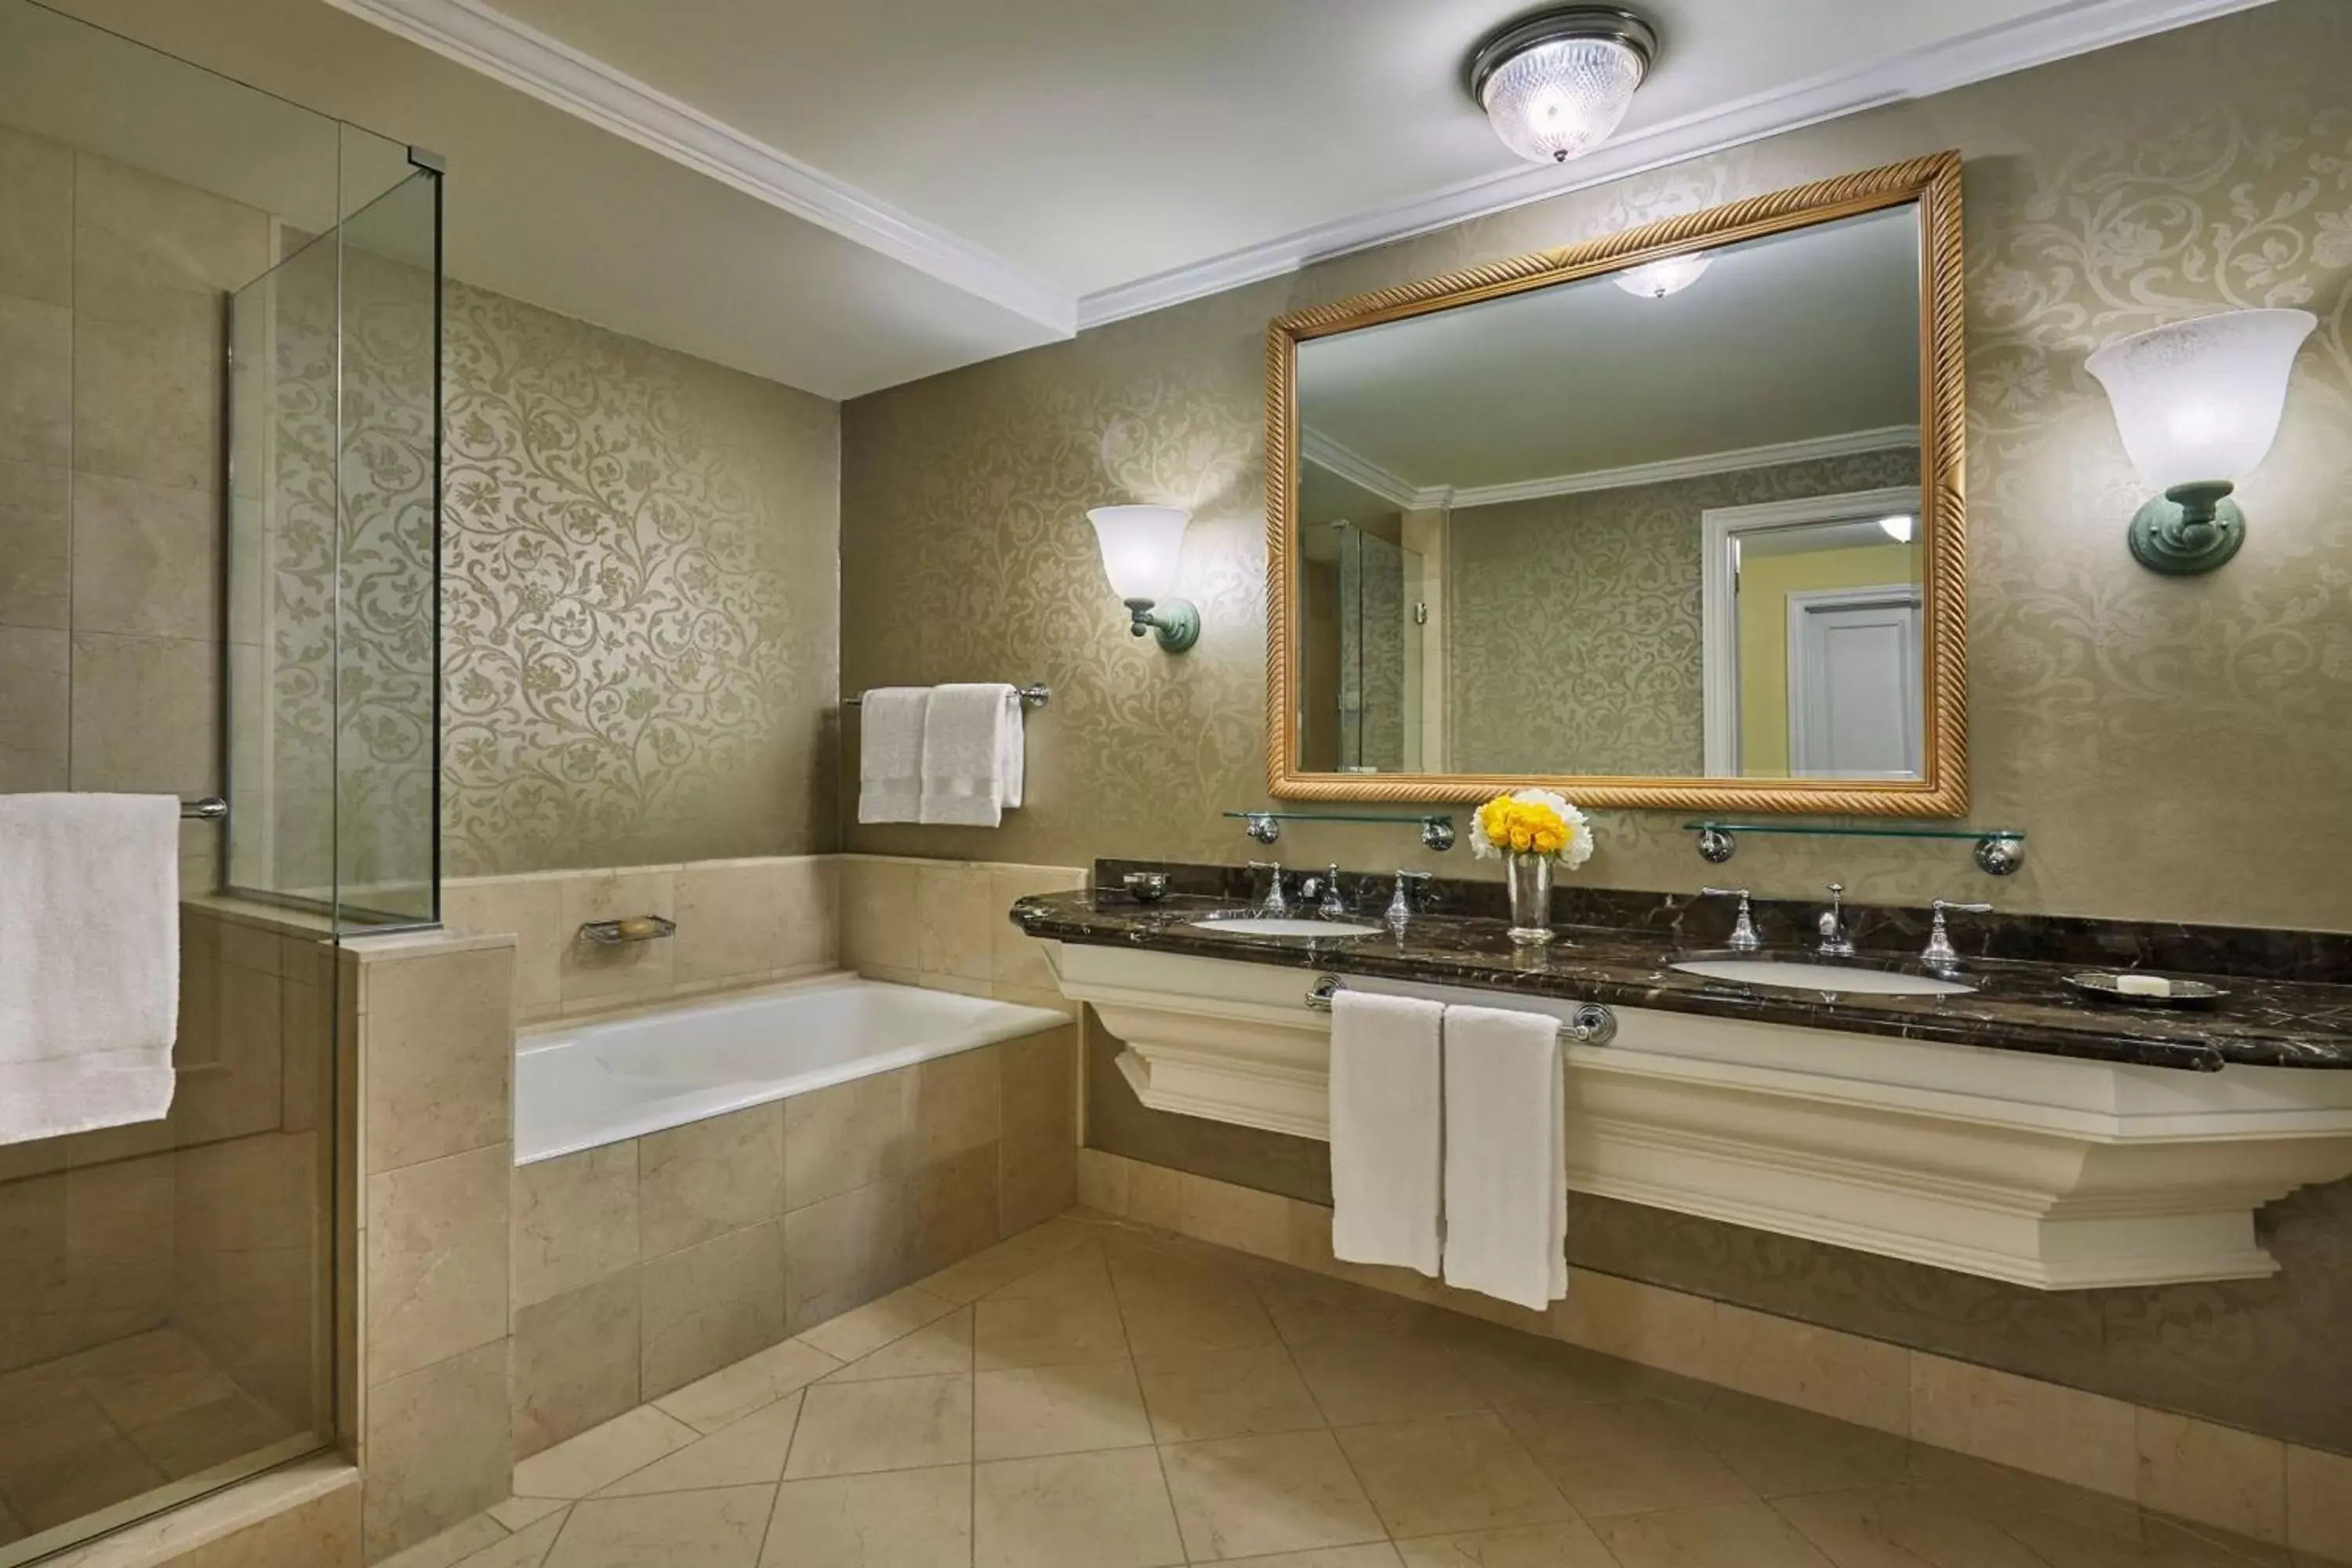 Photo of the whole room, Bathroom in The Las Colinas Resort, Dallas